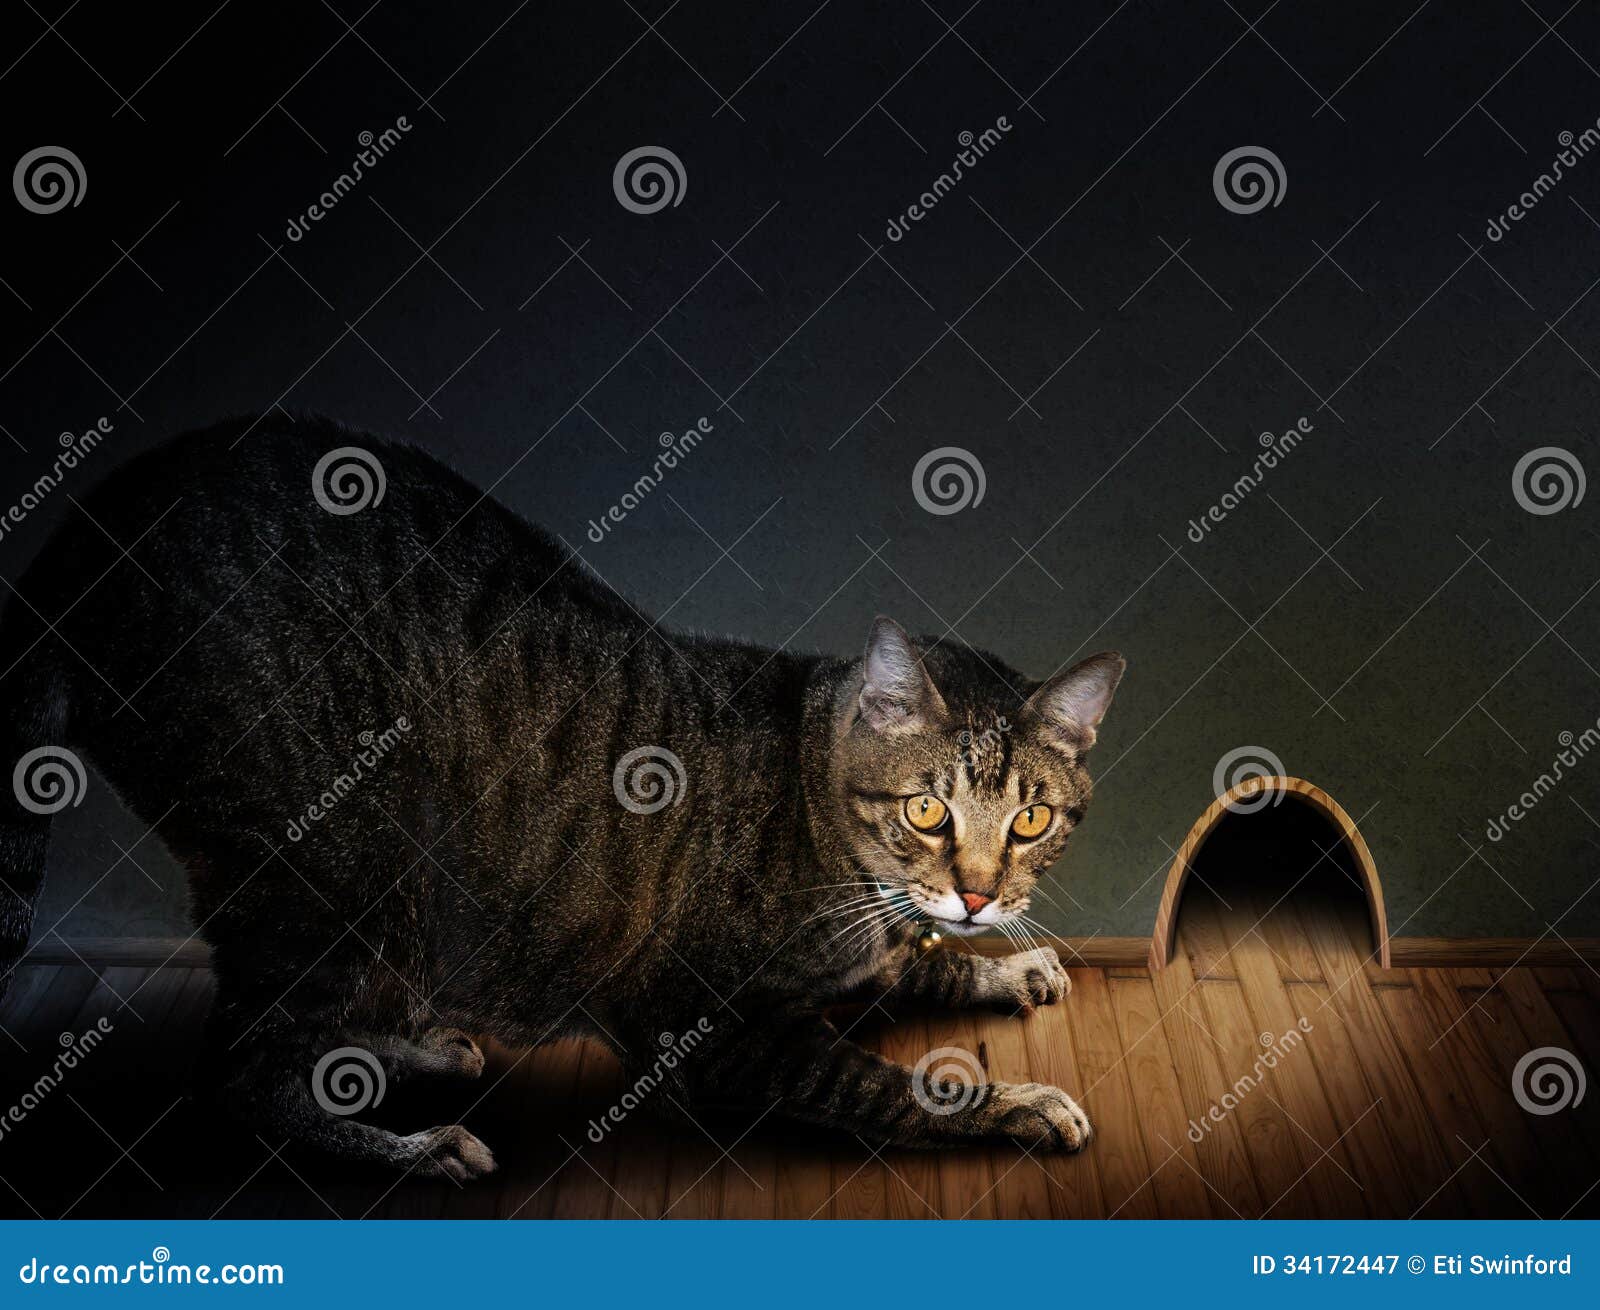 Kot i mysz. Tabby kot kuca na drewniany podłogowy patrzeć w wielką myszy dziurę w ścianie.  Pojęcie dla kota i myszy gry.